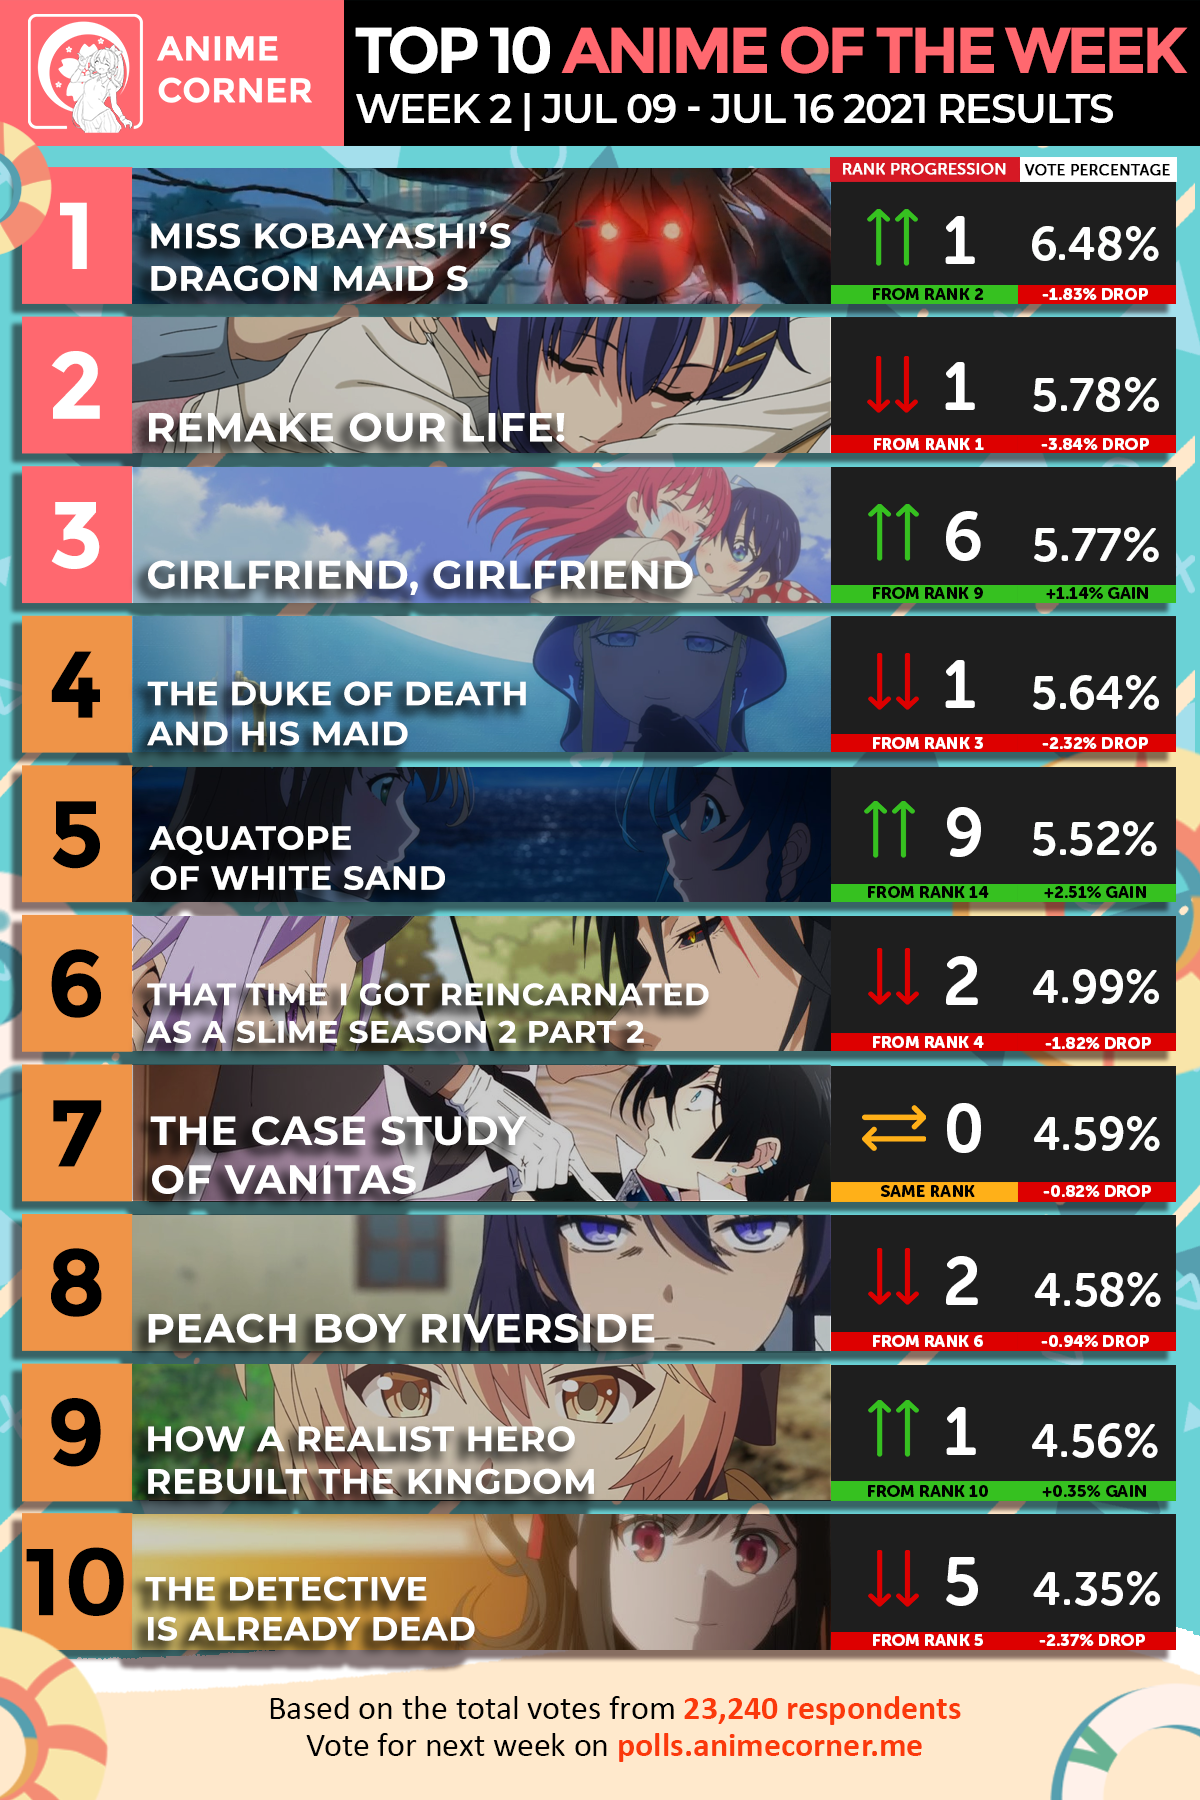 Ousama Ranking Episode 1 - Anime vs Manga Comparison - YouTube